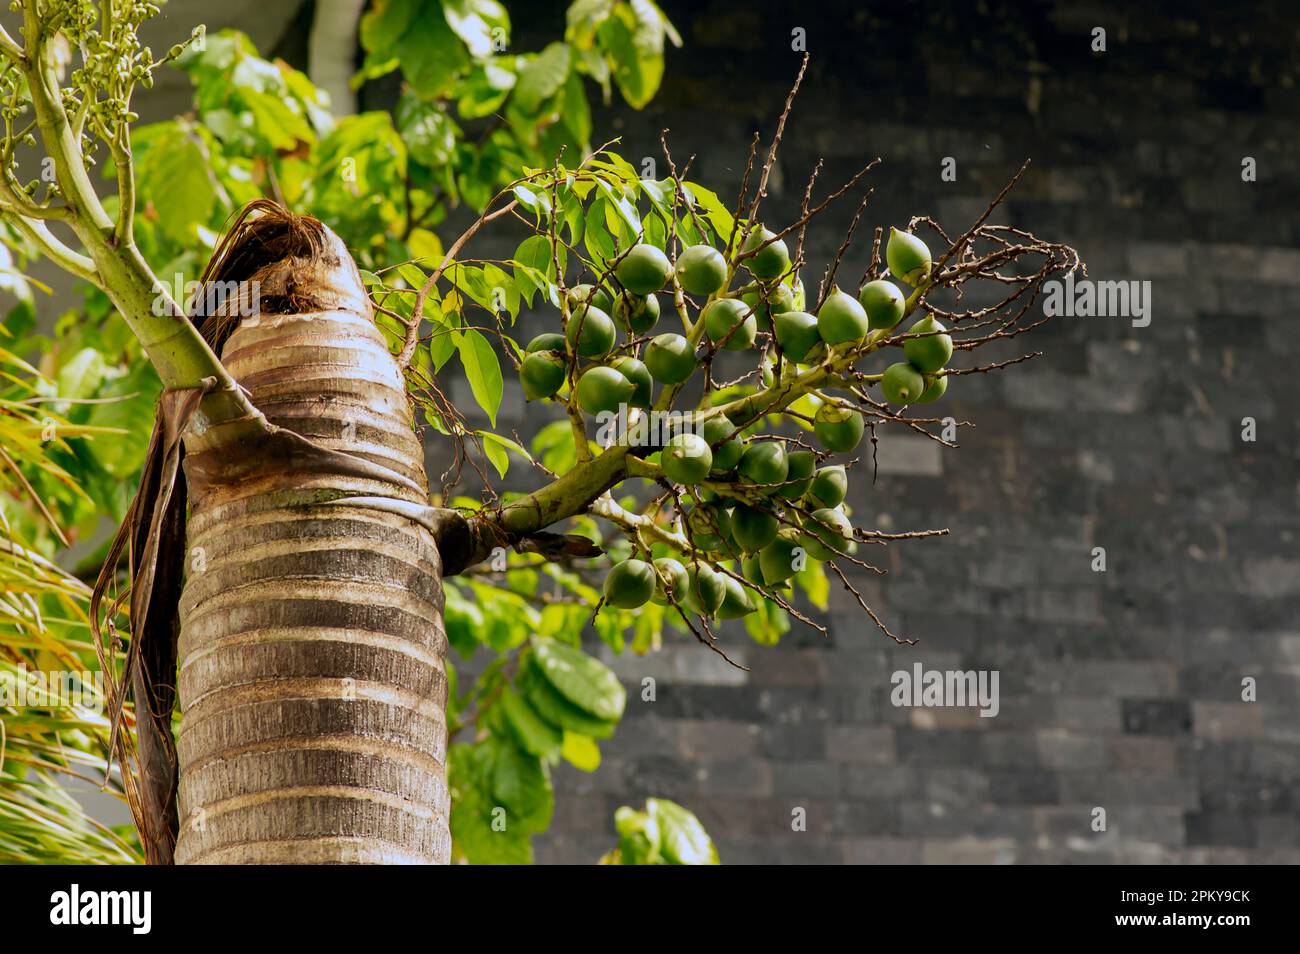 Fruits de palme à noix d'arec, noix de bétel, paume de bétel (Areca catechu) accrochée à son arbre Banque D'Images